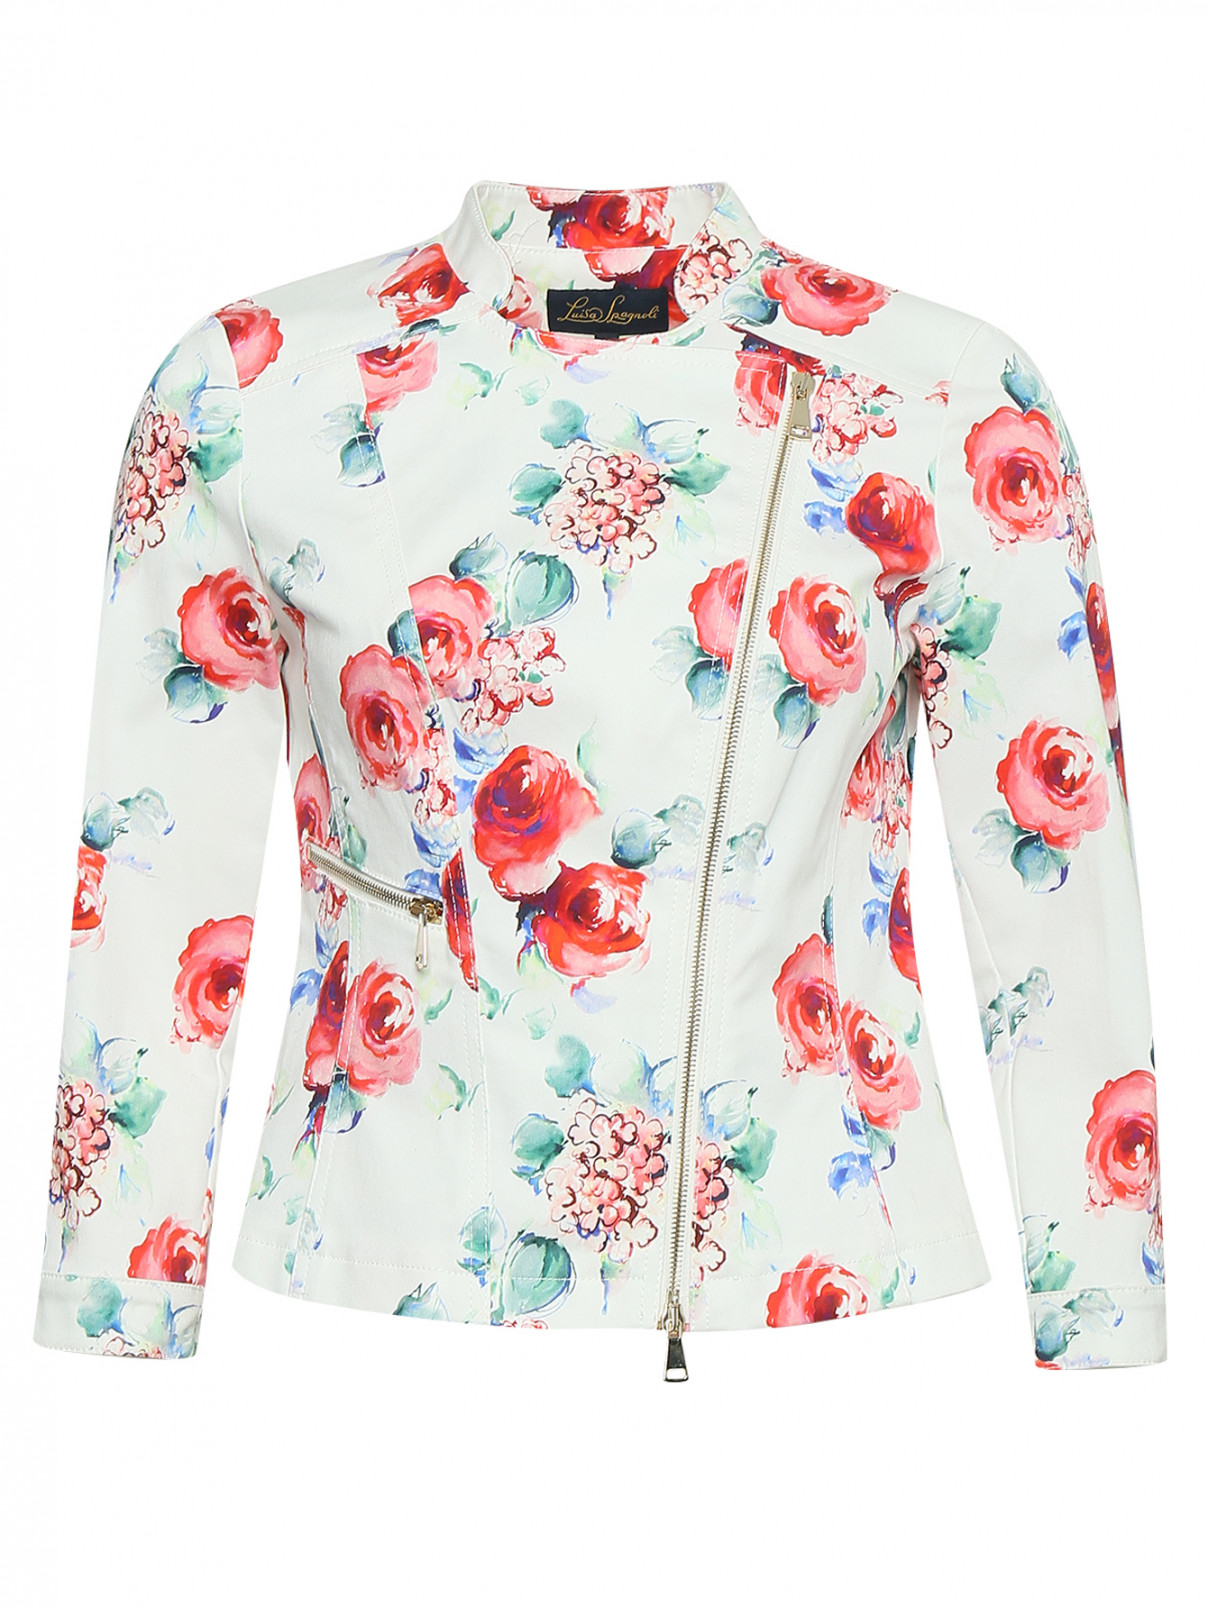 Куртка из хлопка с цветочным узором Luisa Spagnoli  –  Общий вид  – Цвет:  Узор